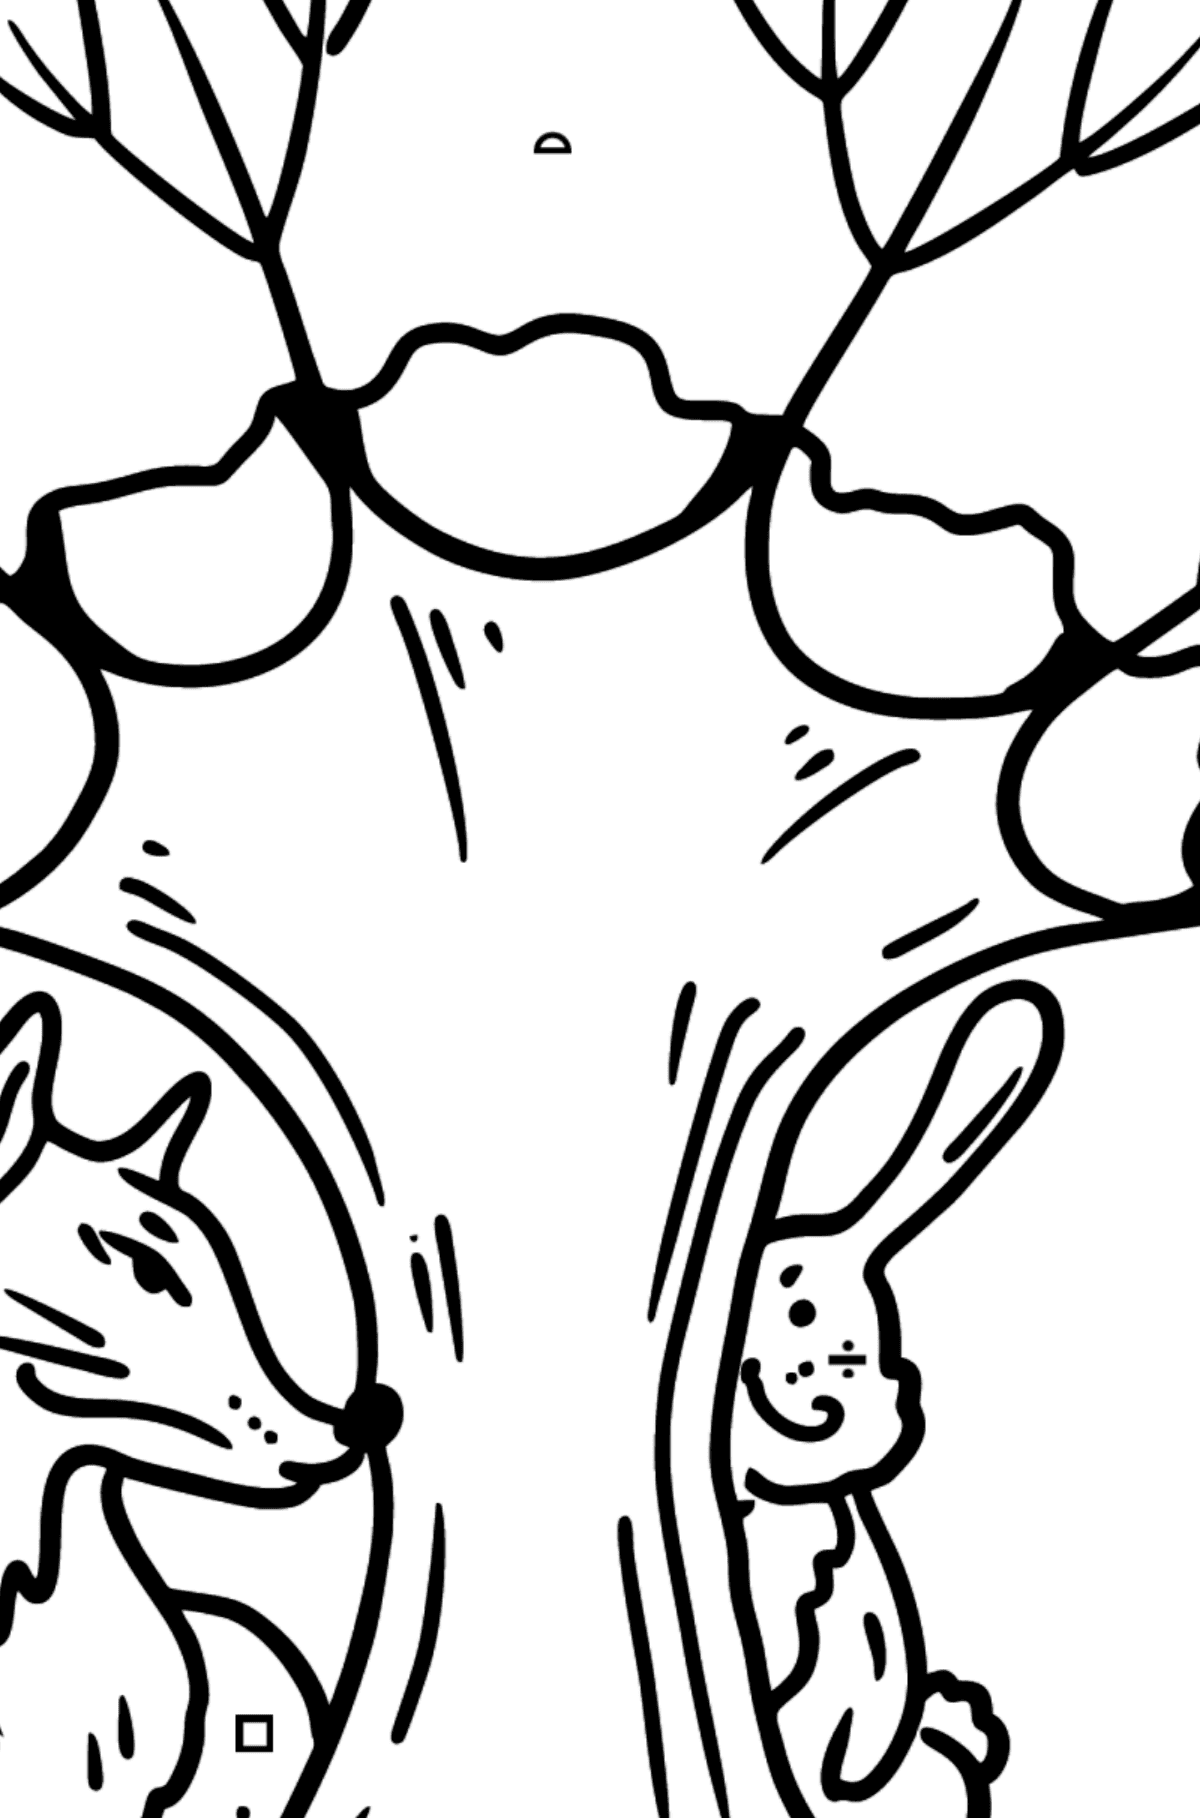 Desenho para colorir do coelho e da raposa - Colorir por Símbolos para Crianças